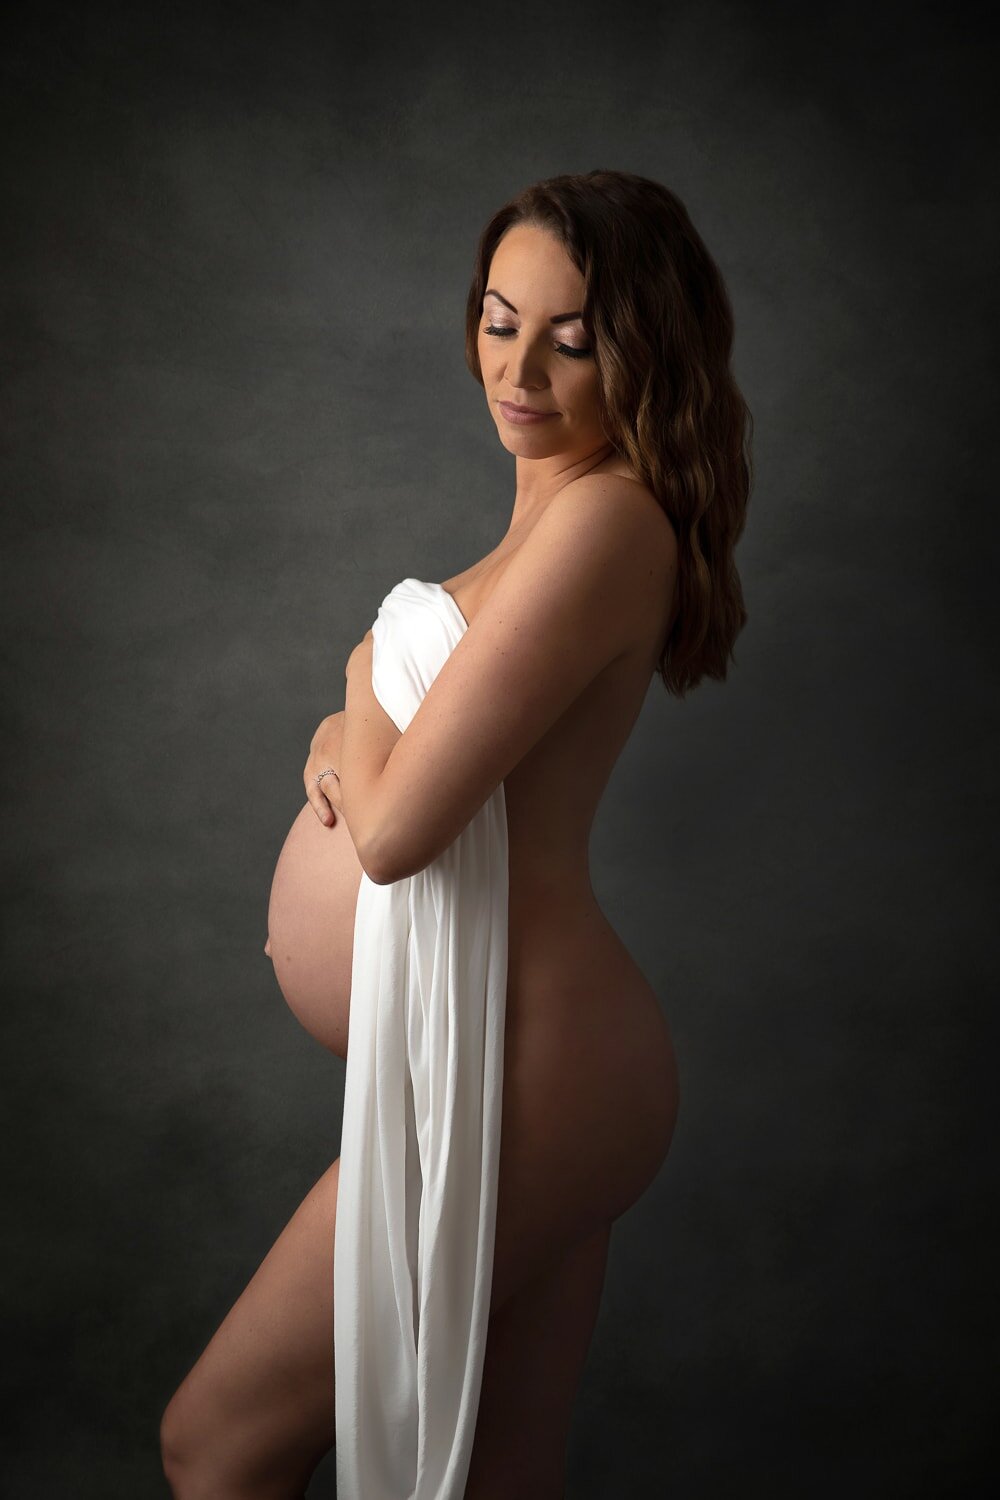 stoke-on-trent-maternity-photographer-3.jpg